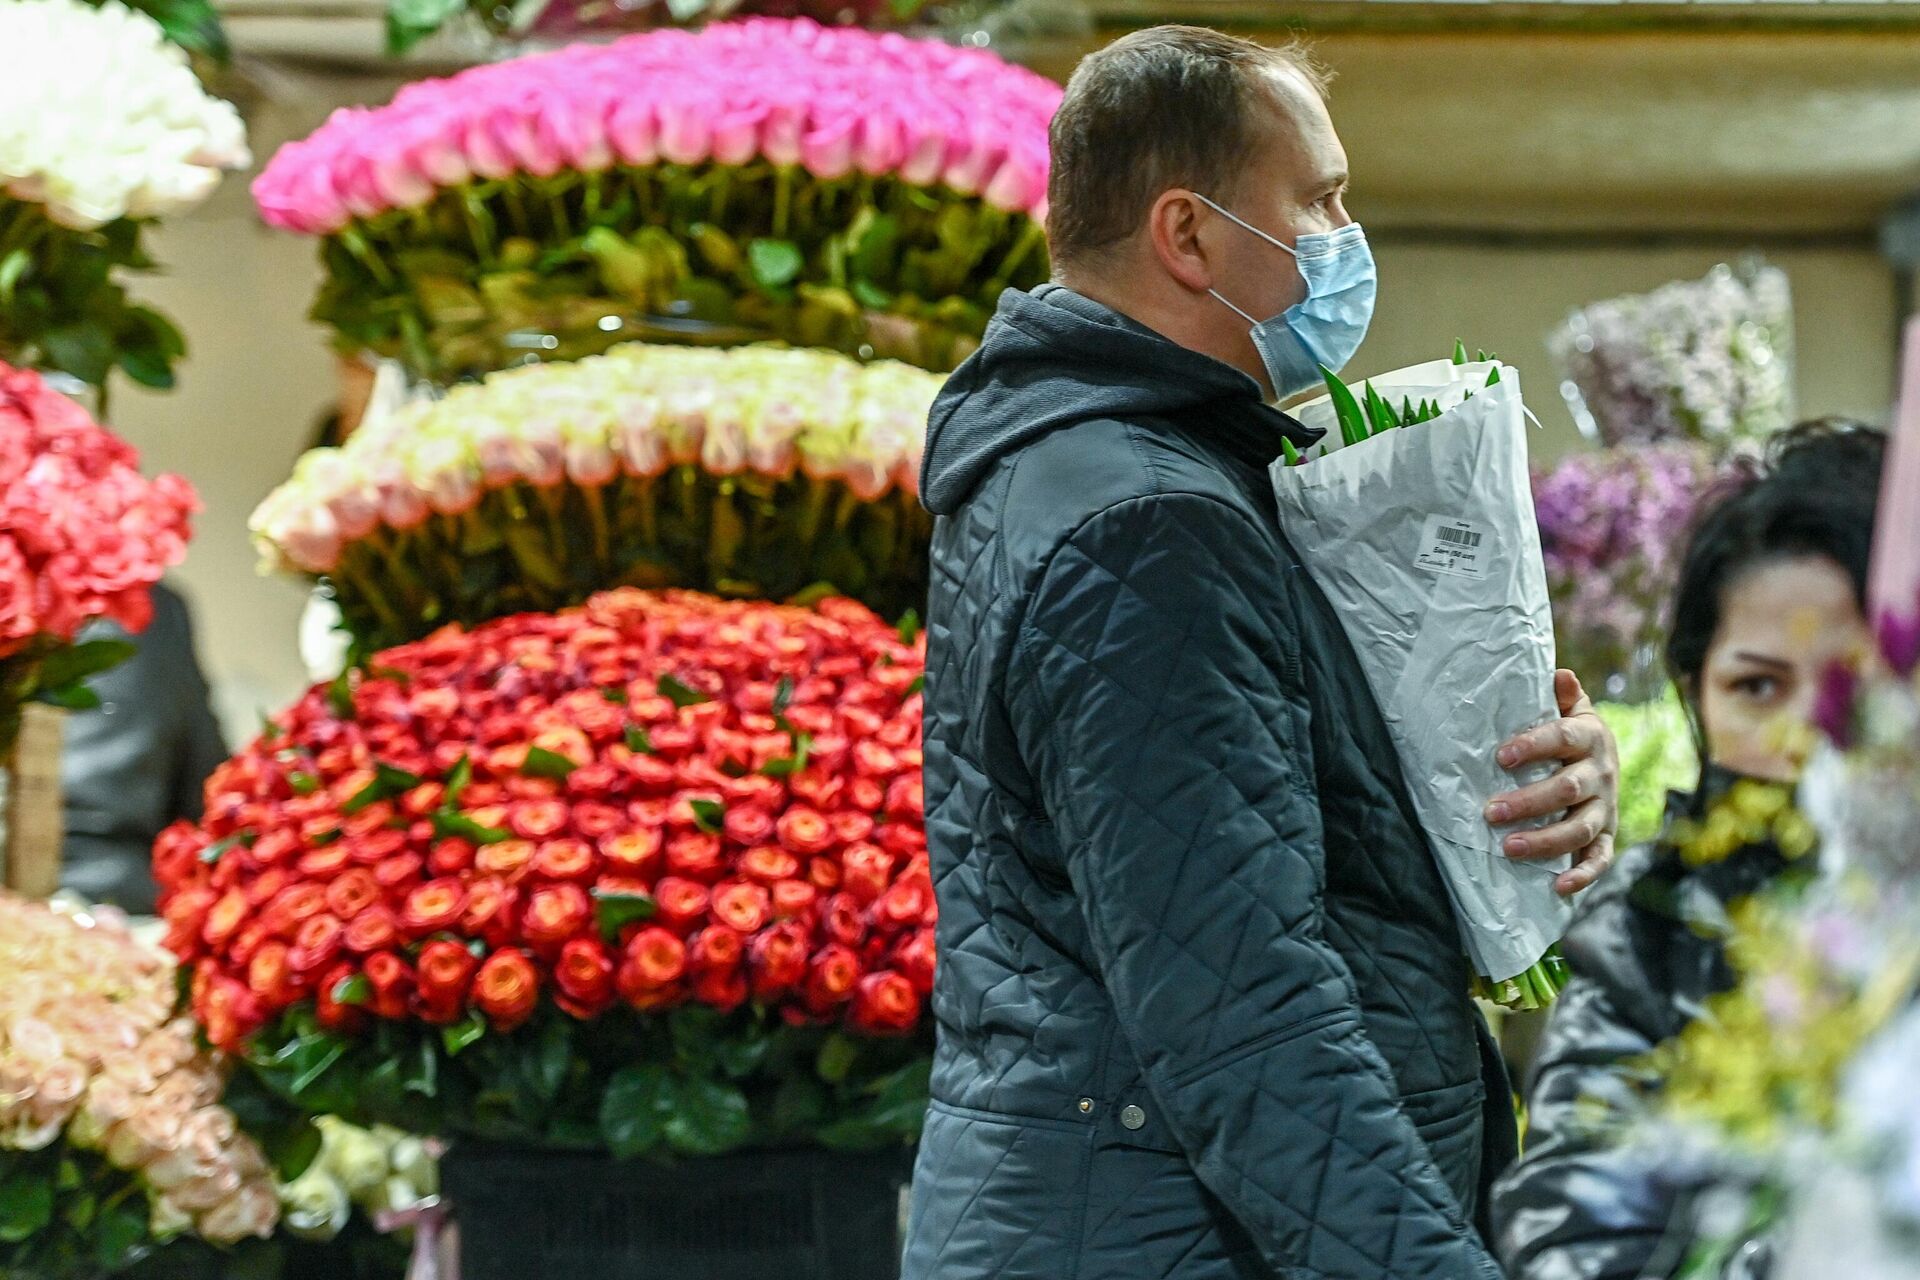 Продажа цветов накануне Международного женского дня на Рижском рынке в Москве - РИА Новости, 1920, 05.03.2021